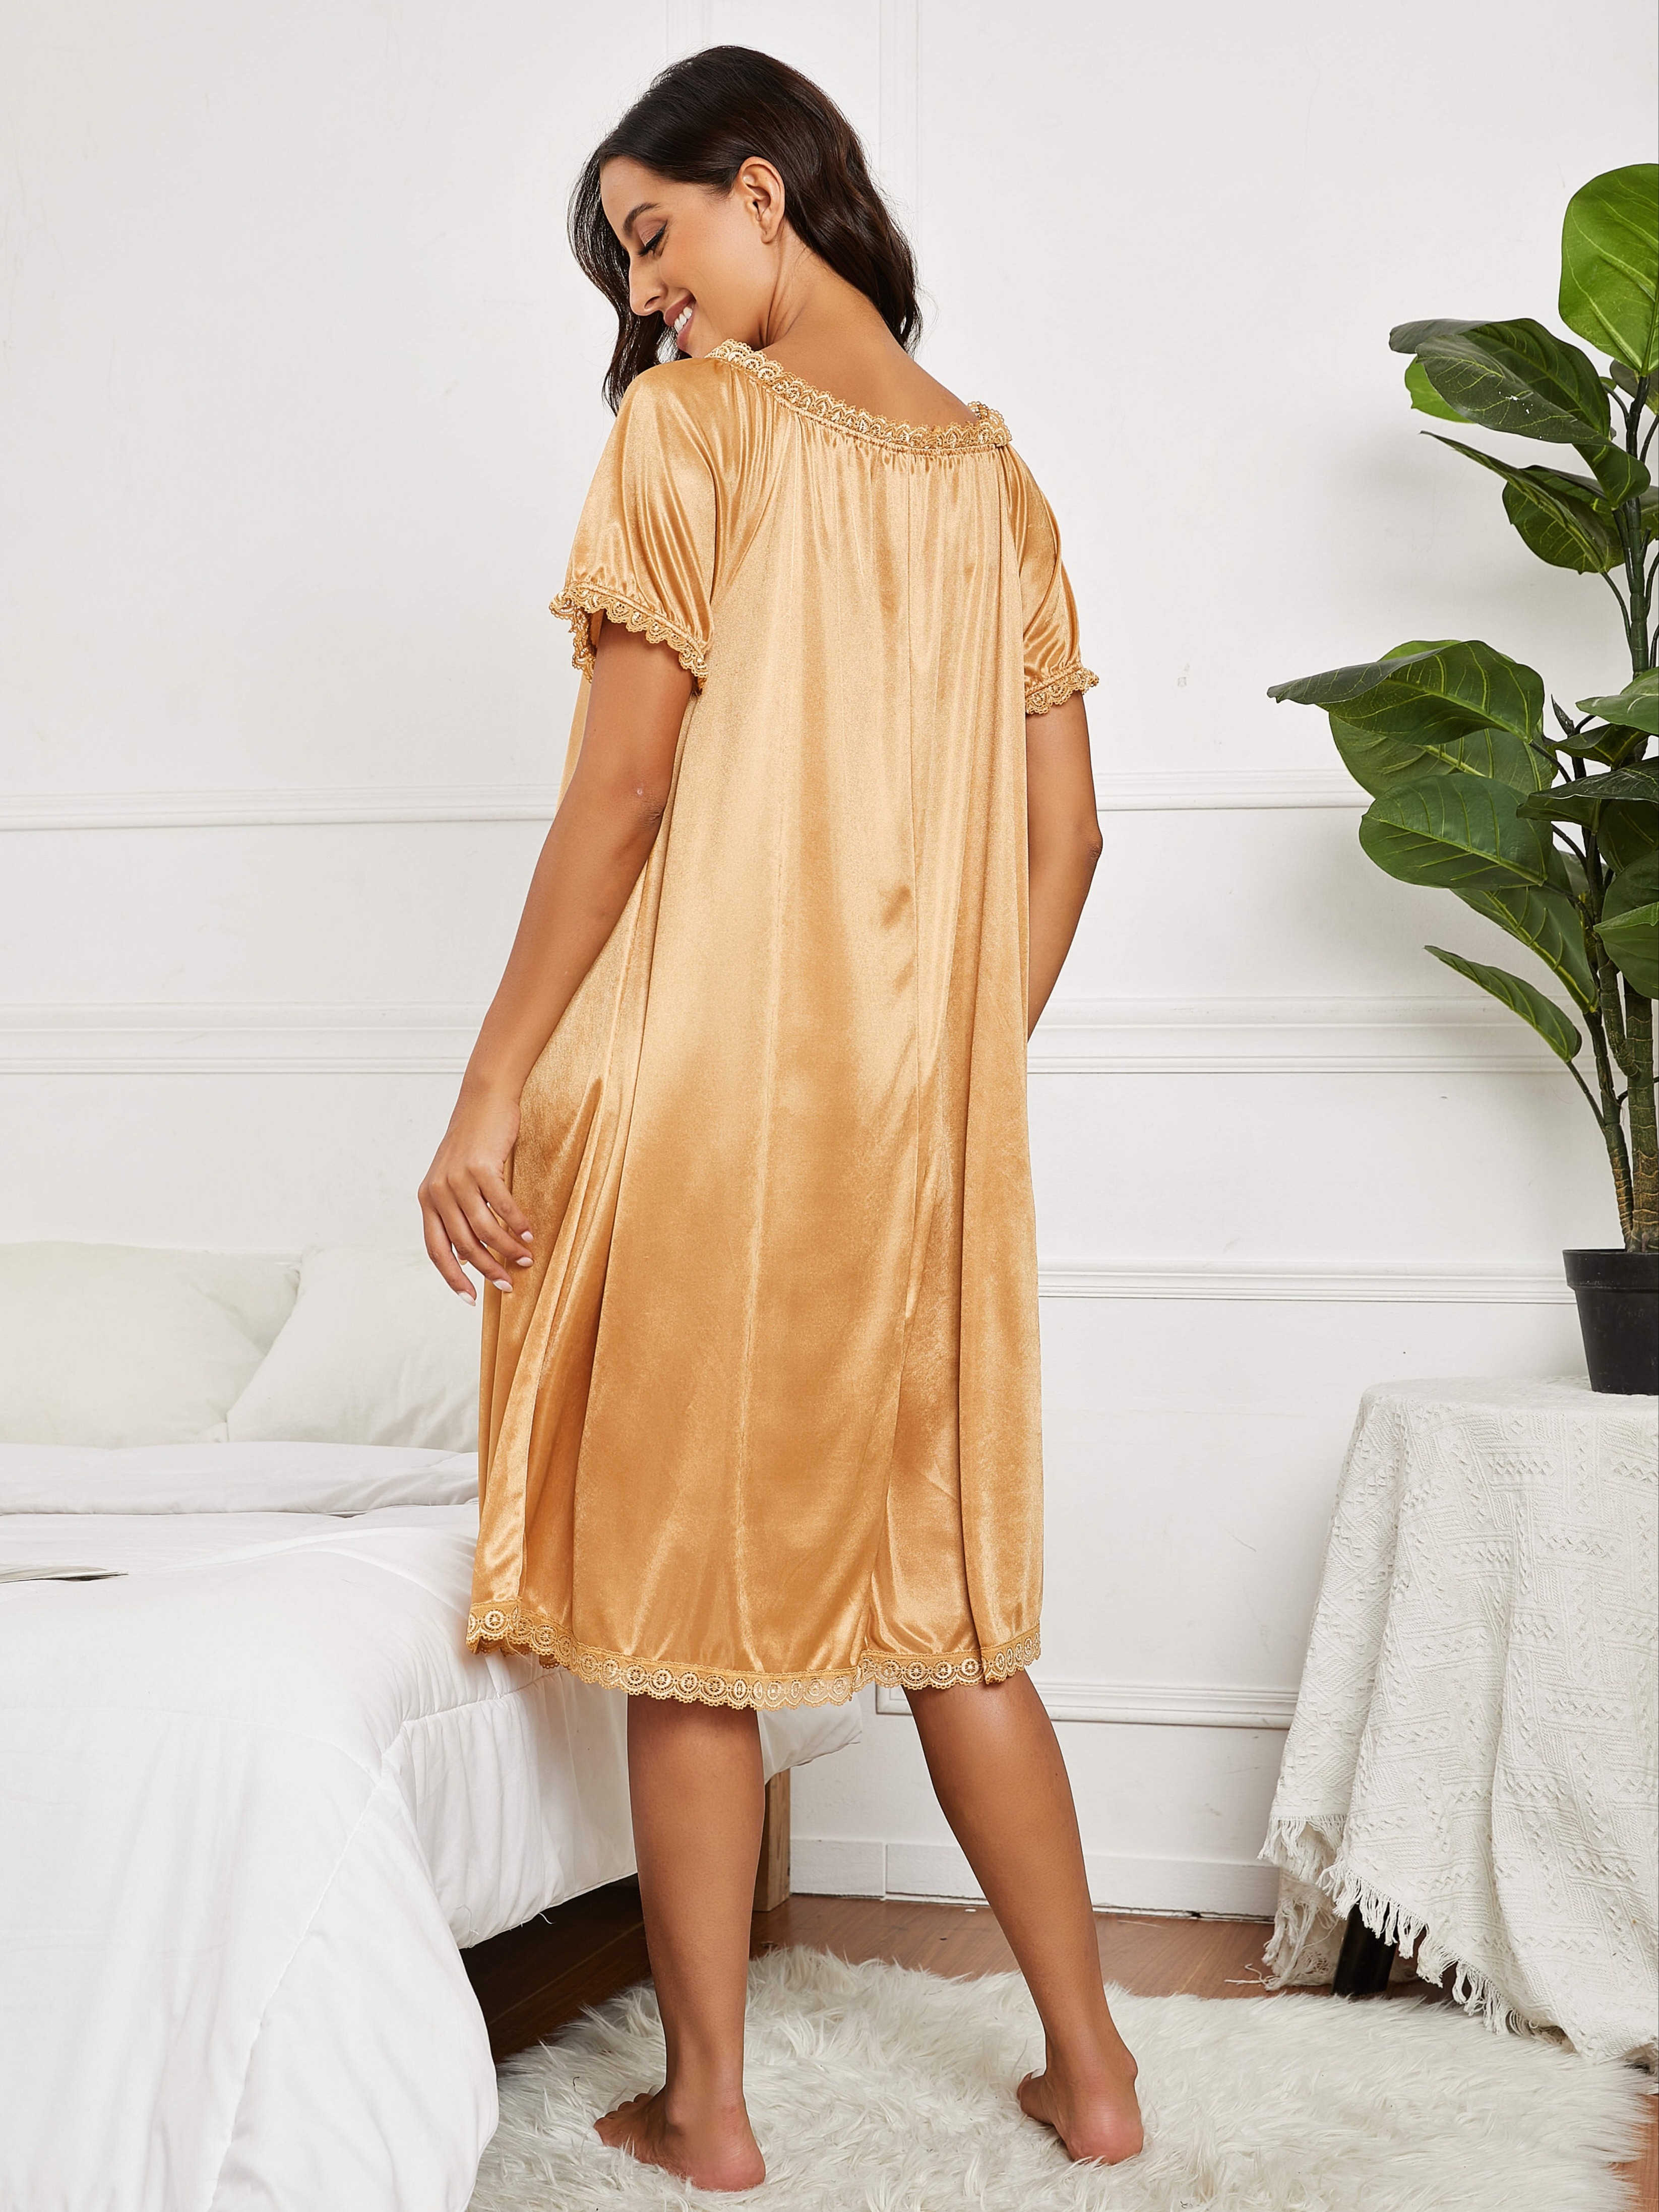 Elegant Lace Trim Nightdress, Soft Sleep Shirt Short Sleeve Sleepwear,  Women's Lingerie & Sleepwear